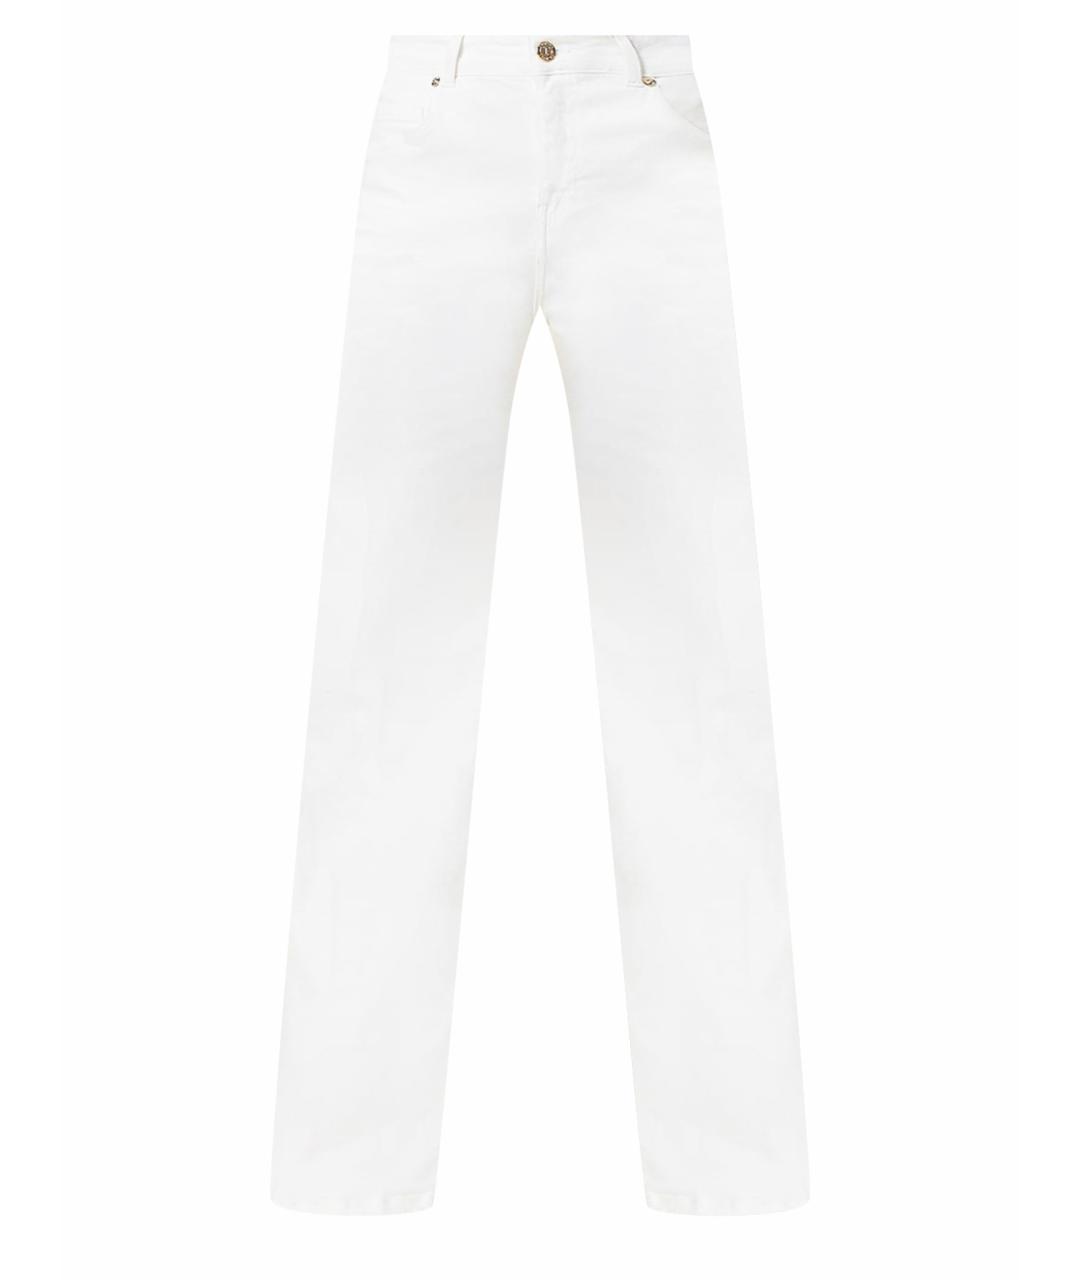 TWIN-SET Белые хлопковые прямые джинсы, фото 1